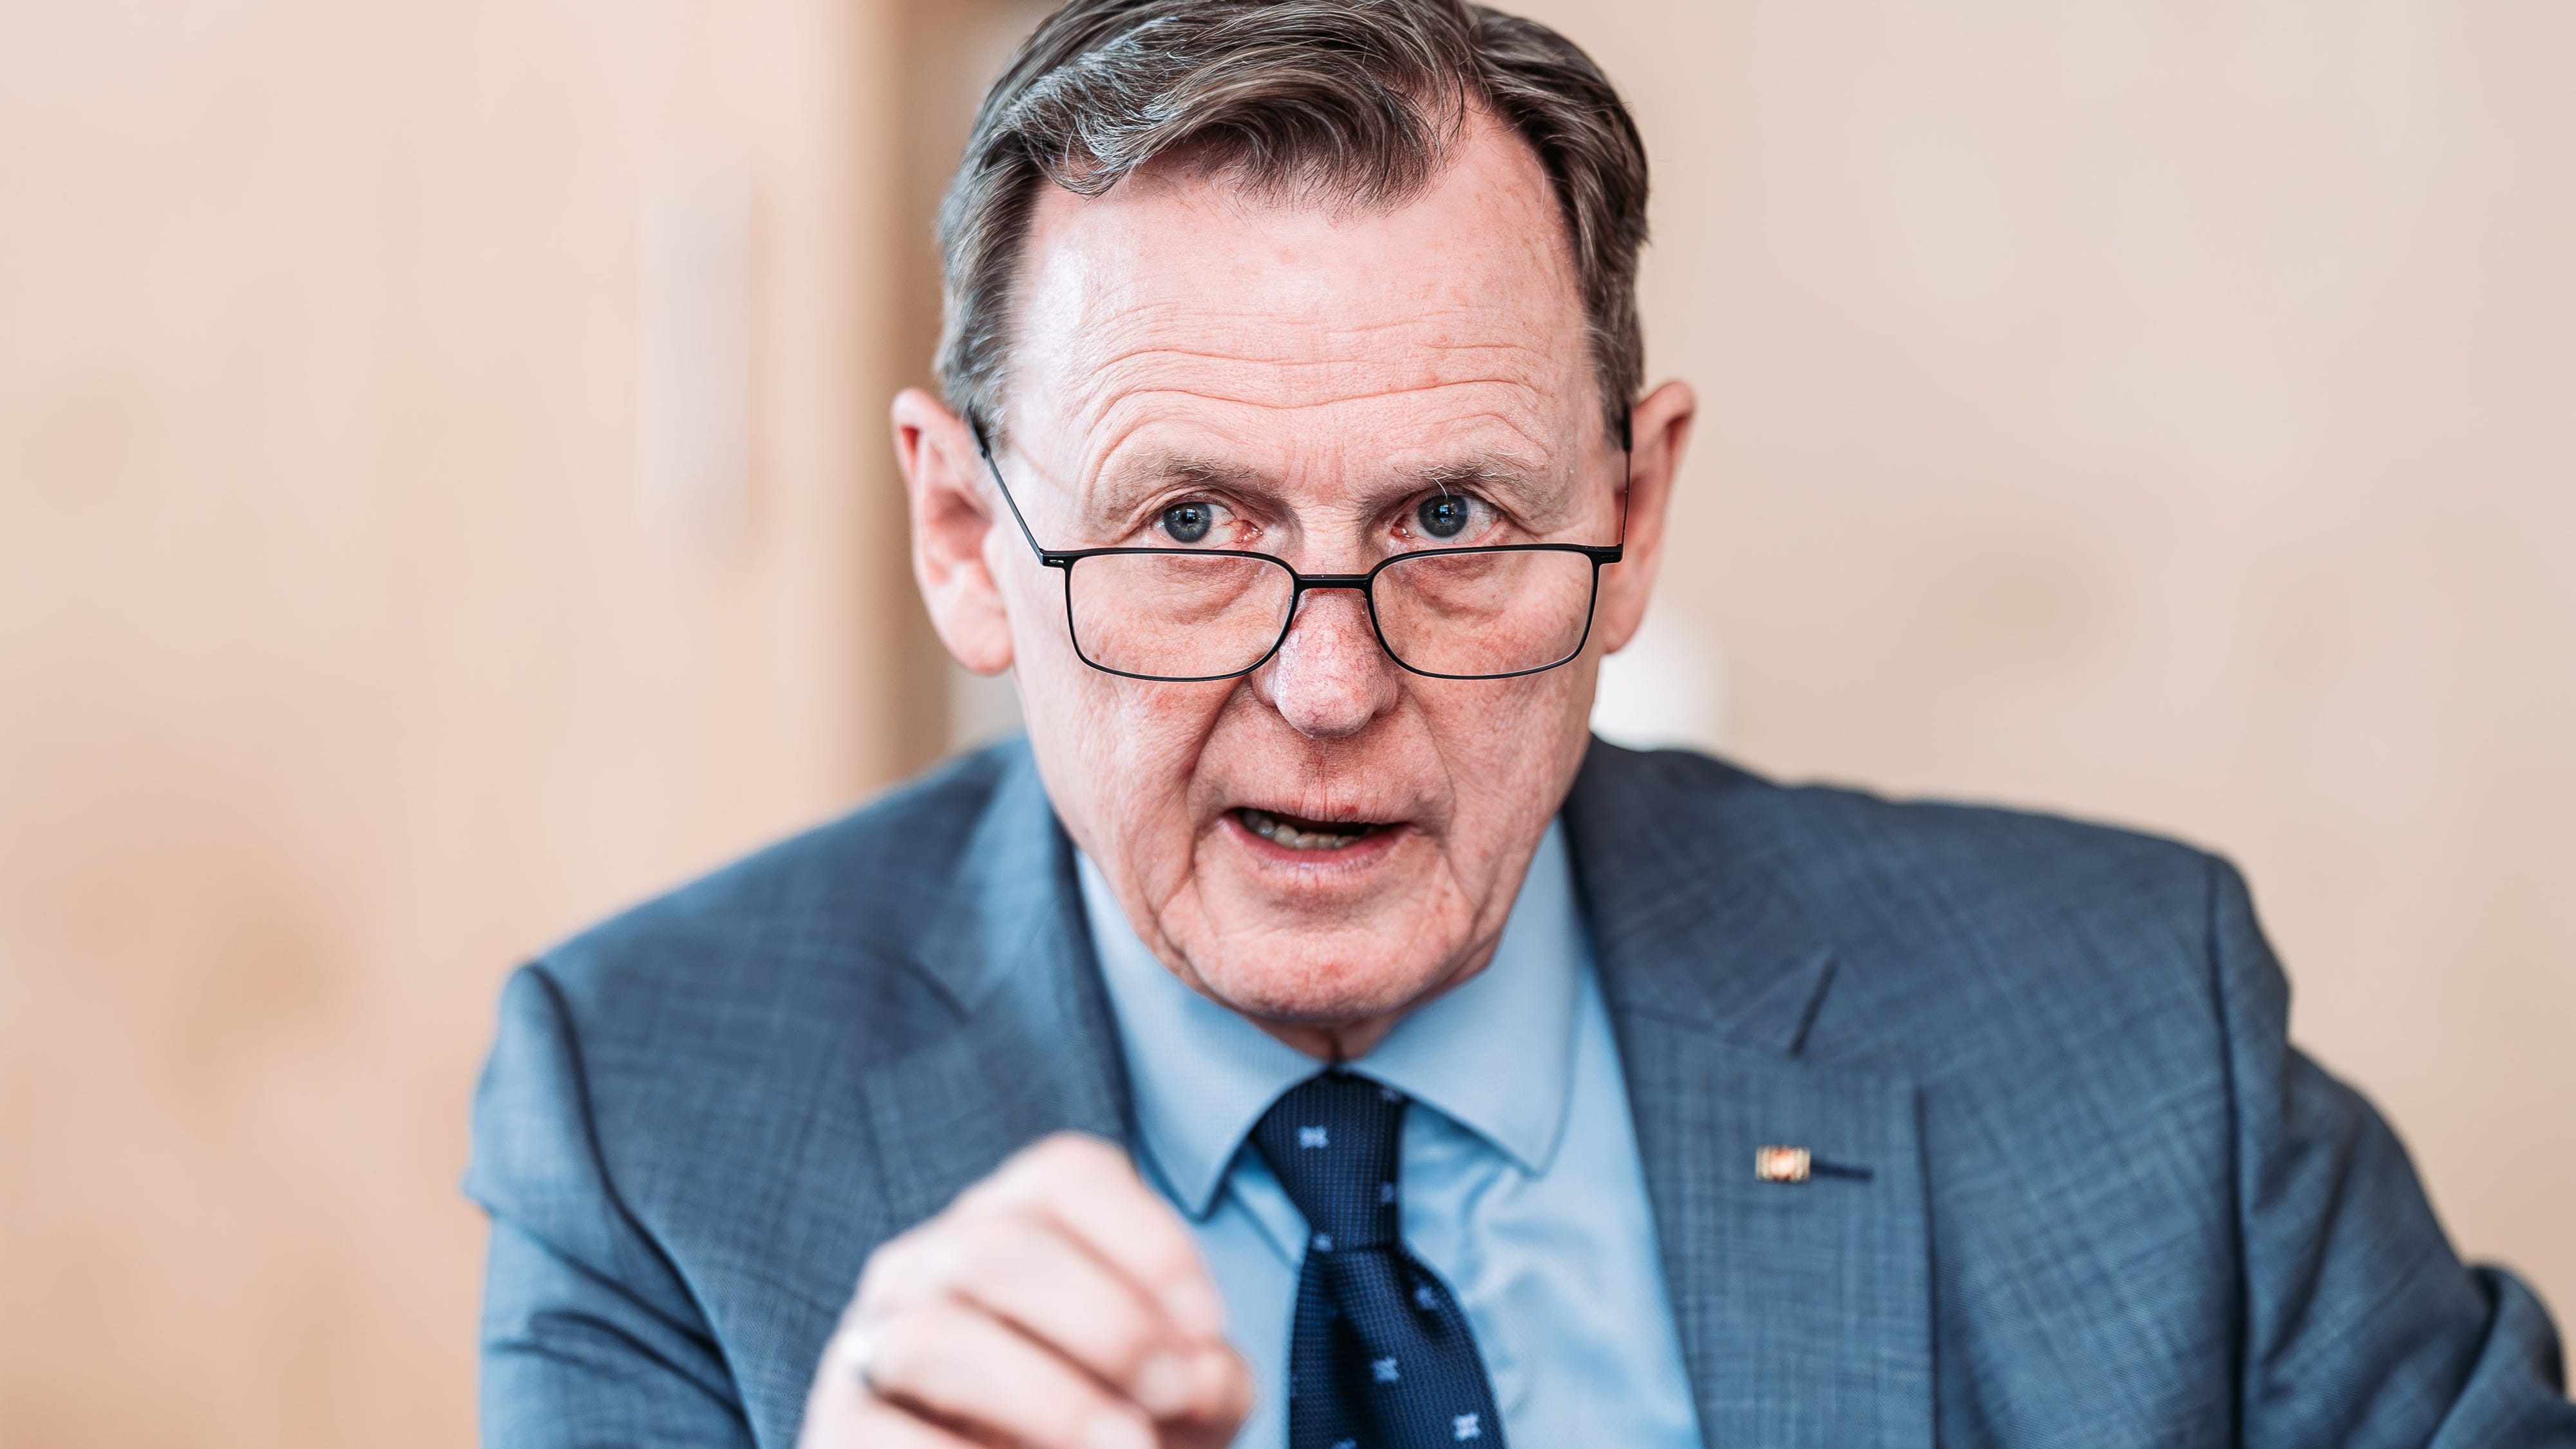 Thüringens Ministerpräsident Bodo Ramelow: “Herr Höcke ist auf seine Art feige”